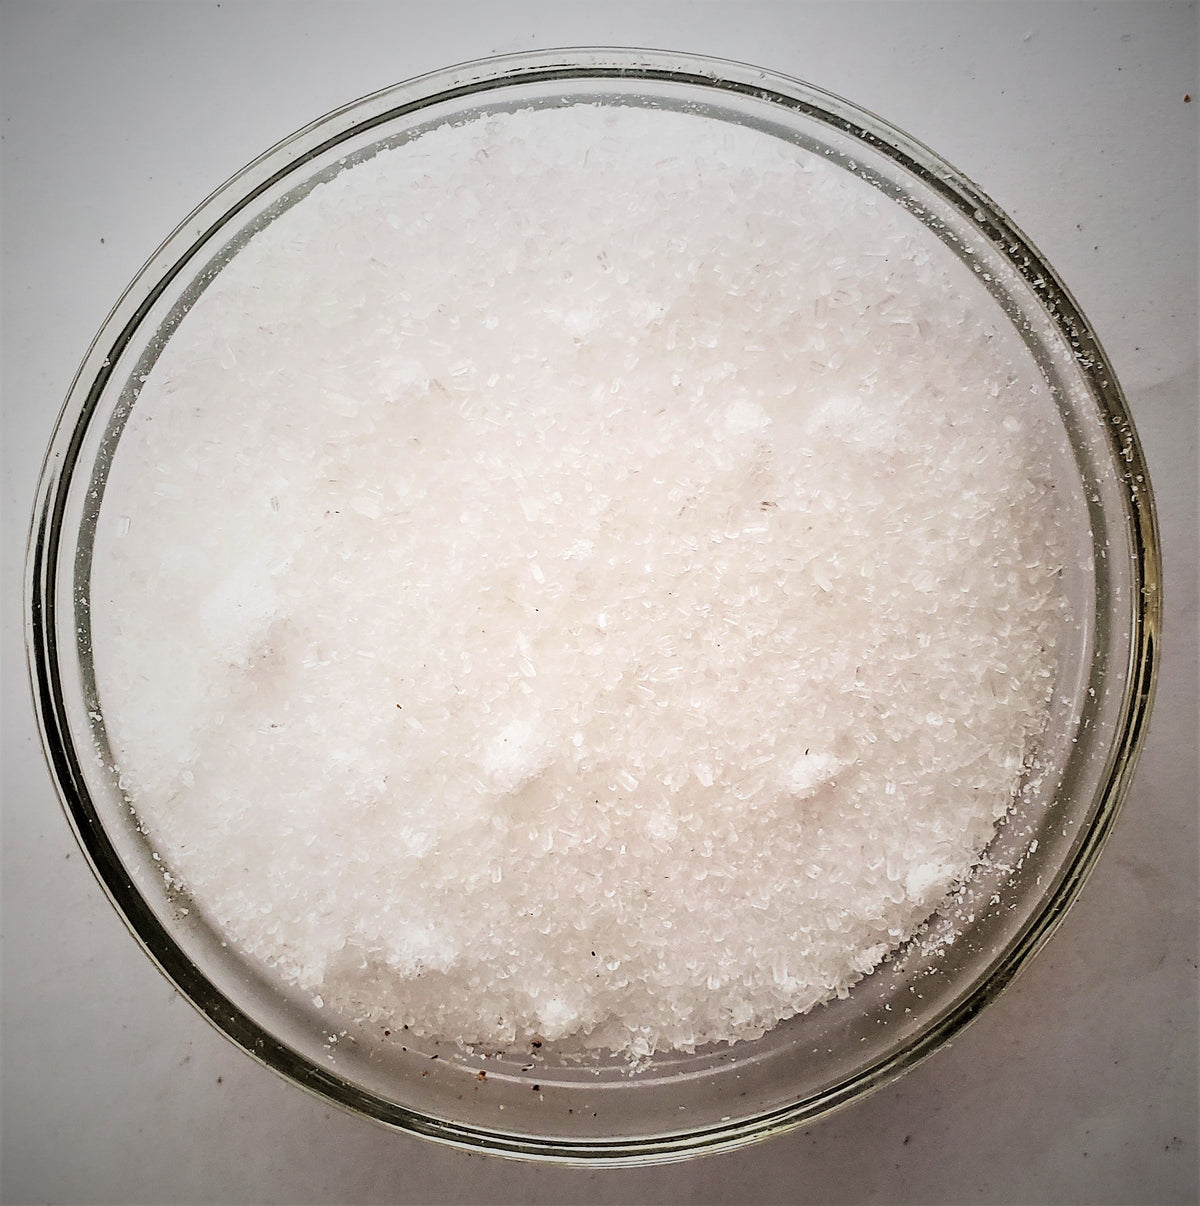 Magnesium Sulfate (Epsom Salt)